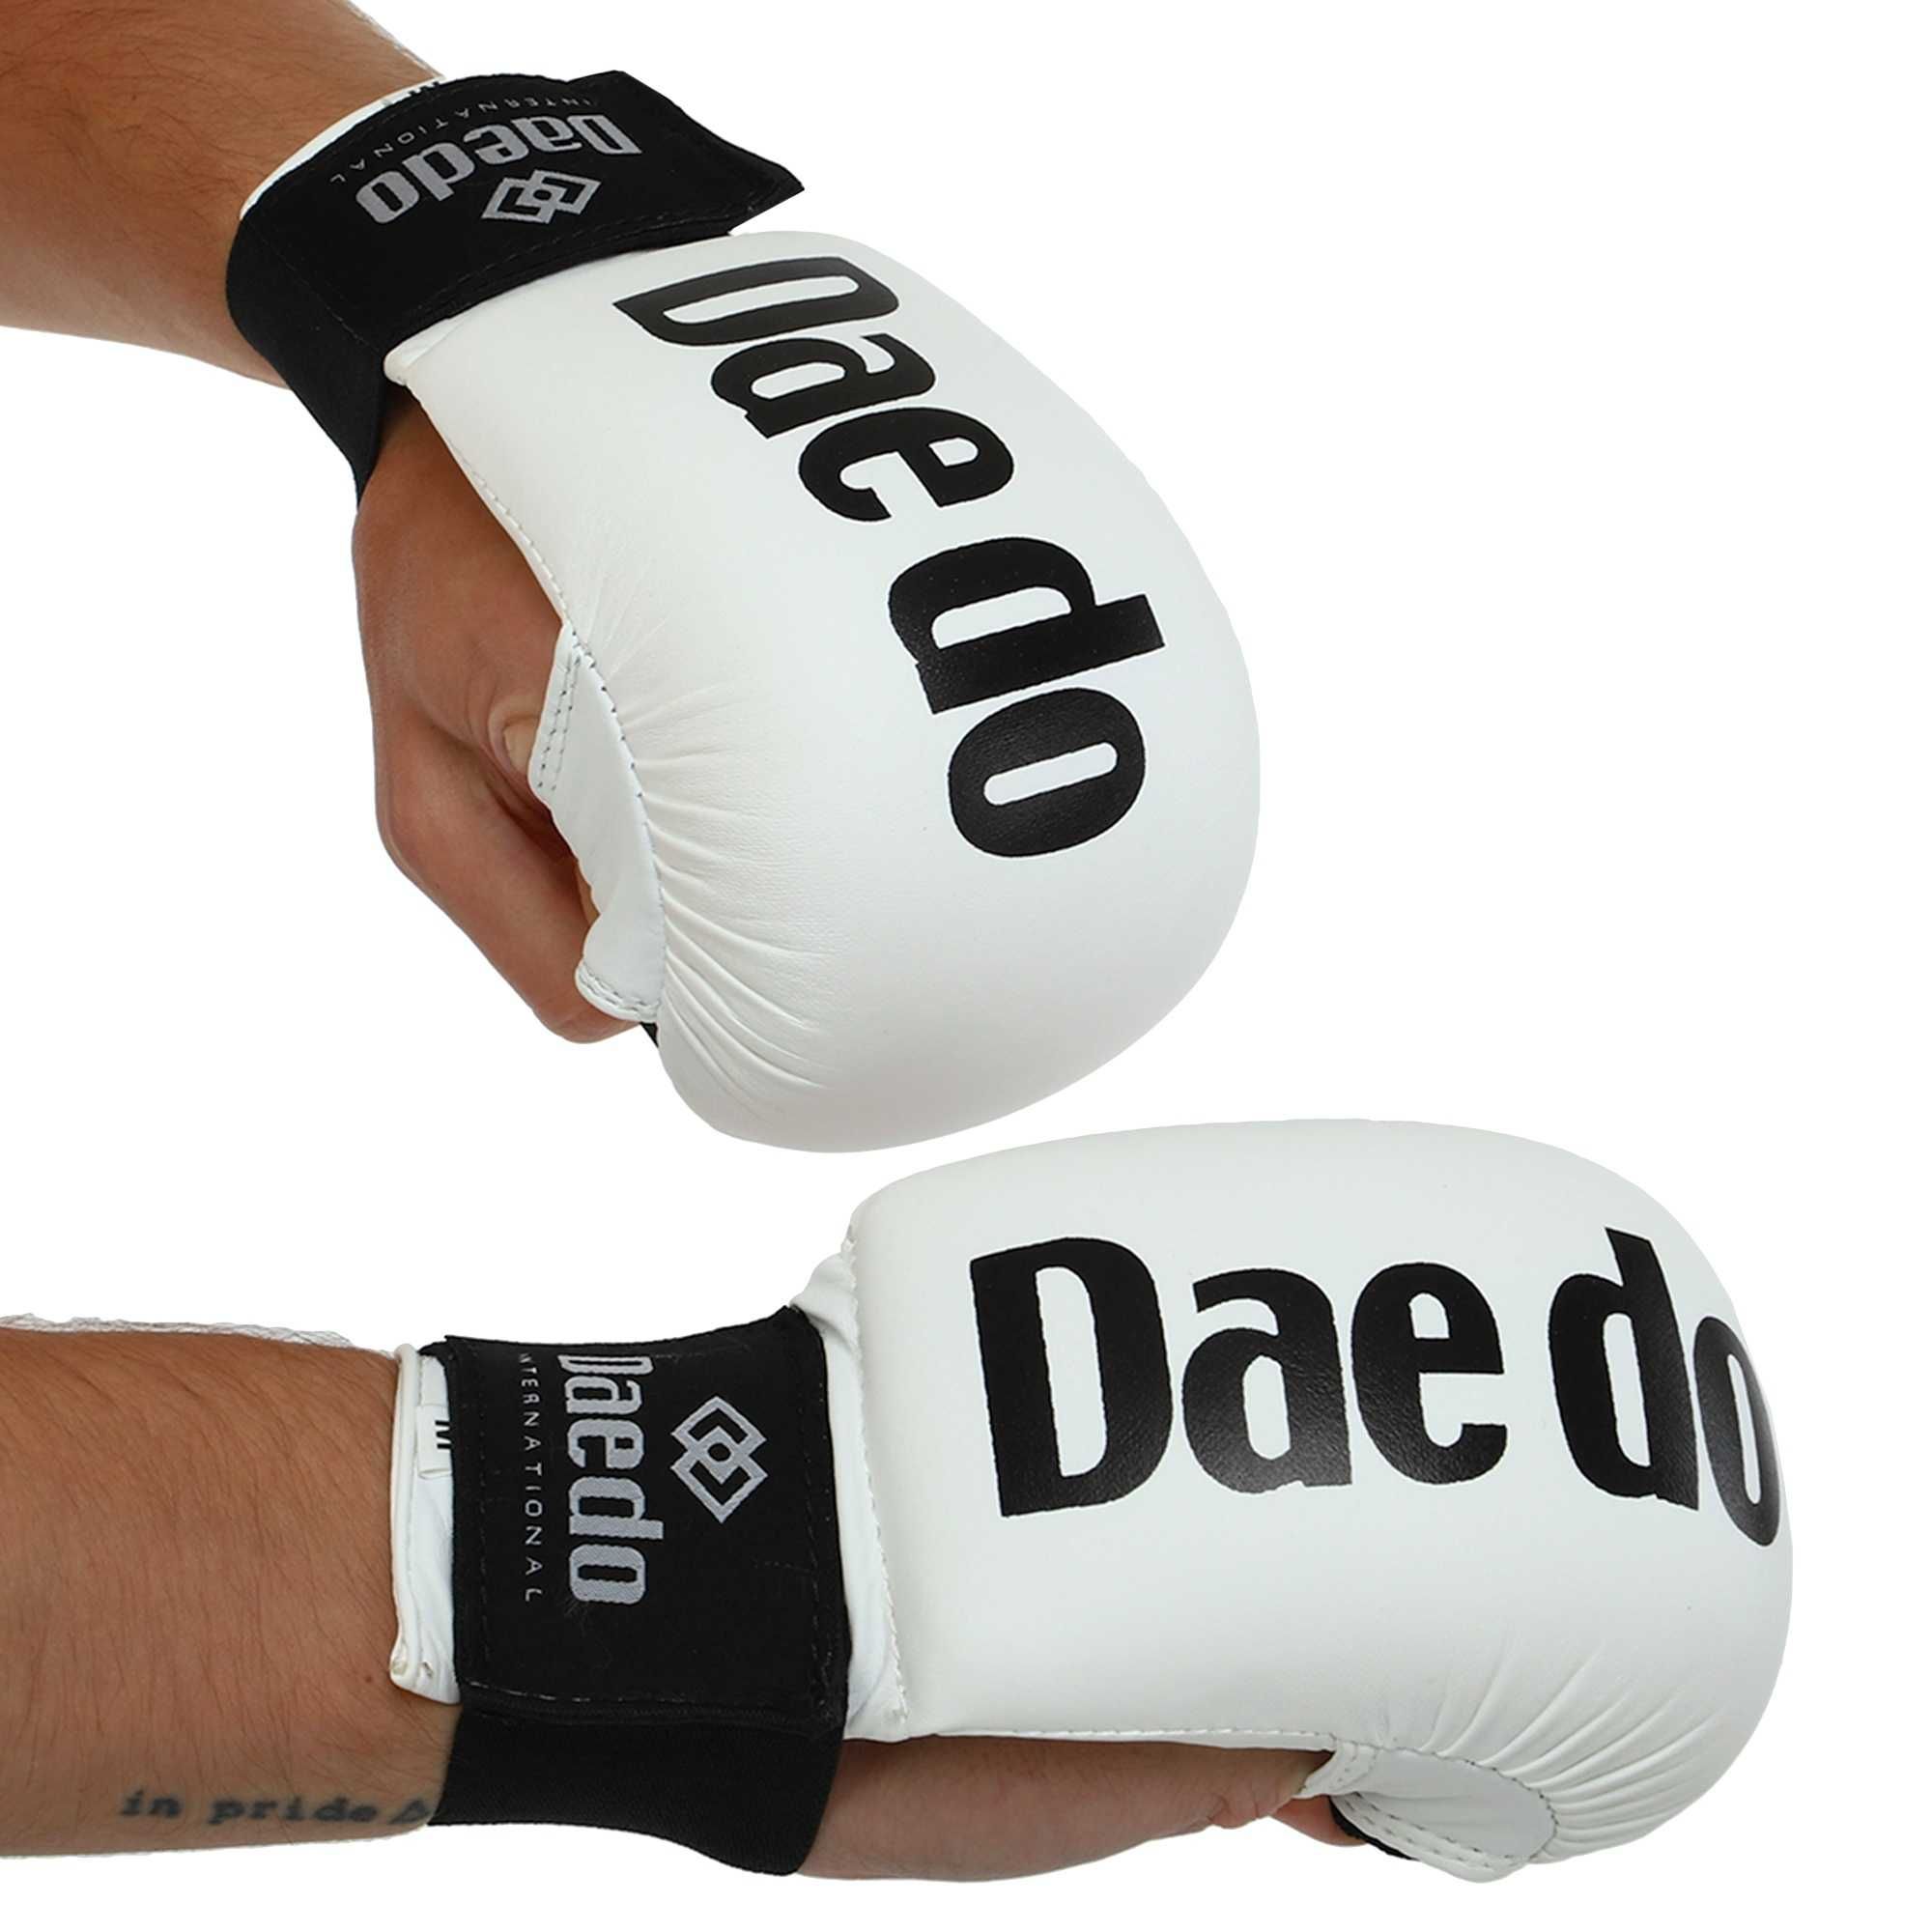 Накладки (перчатки) для карате DAЕ DO,размеры S-L, цвета - ассортимент